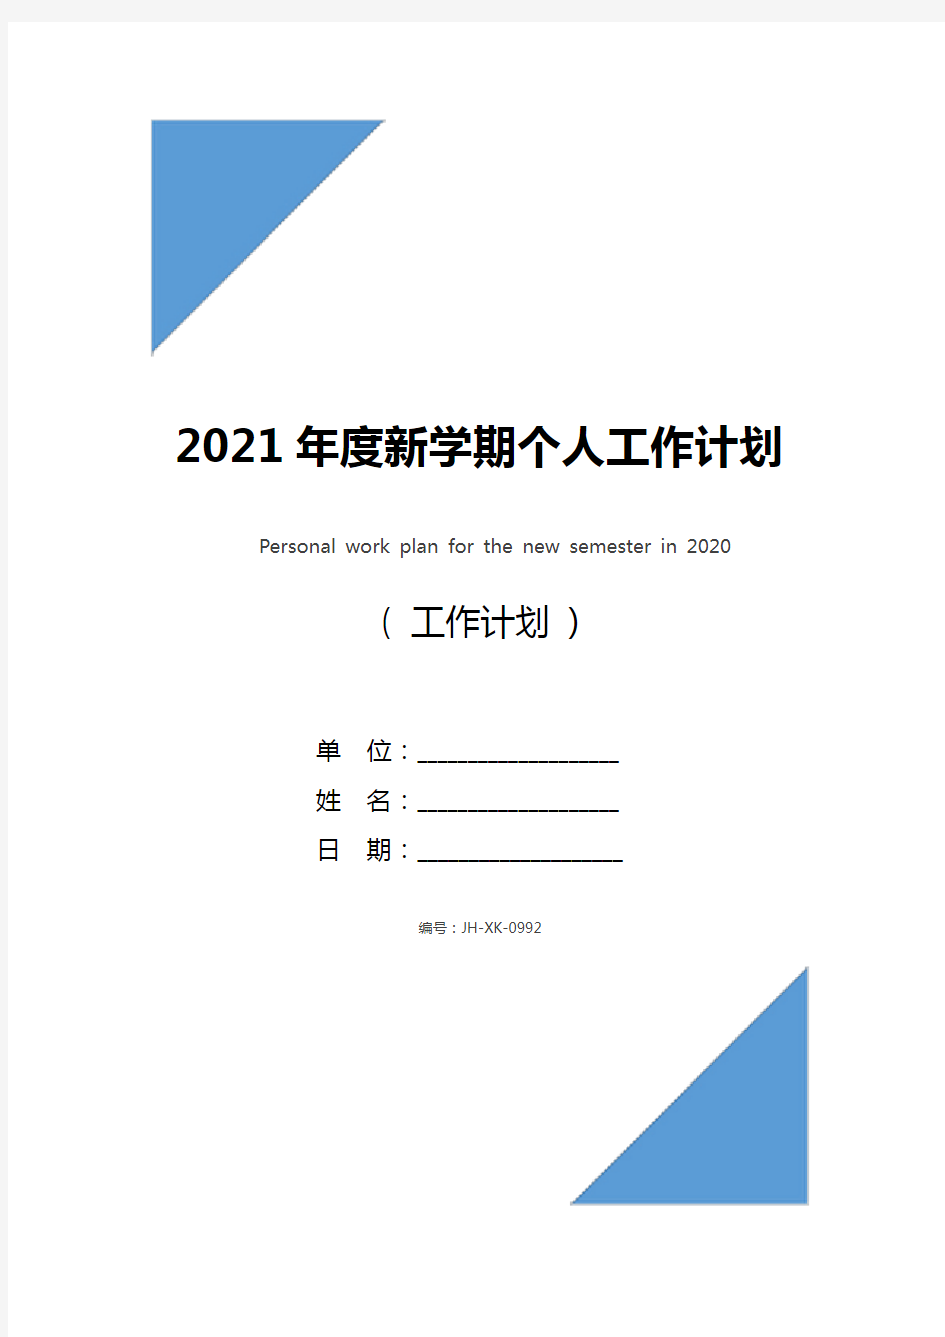 2021年度新学期个人工作计划(最新版)